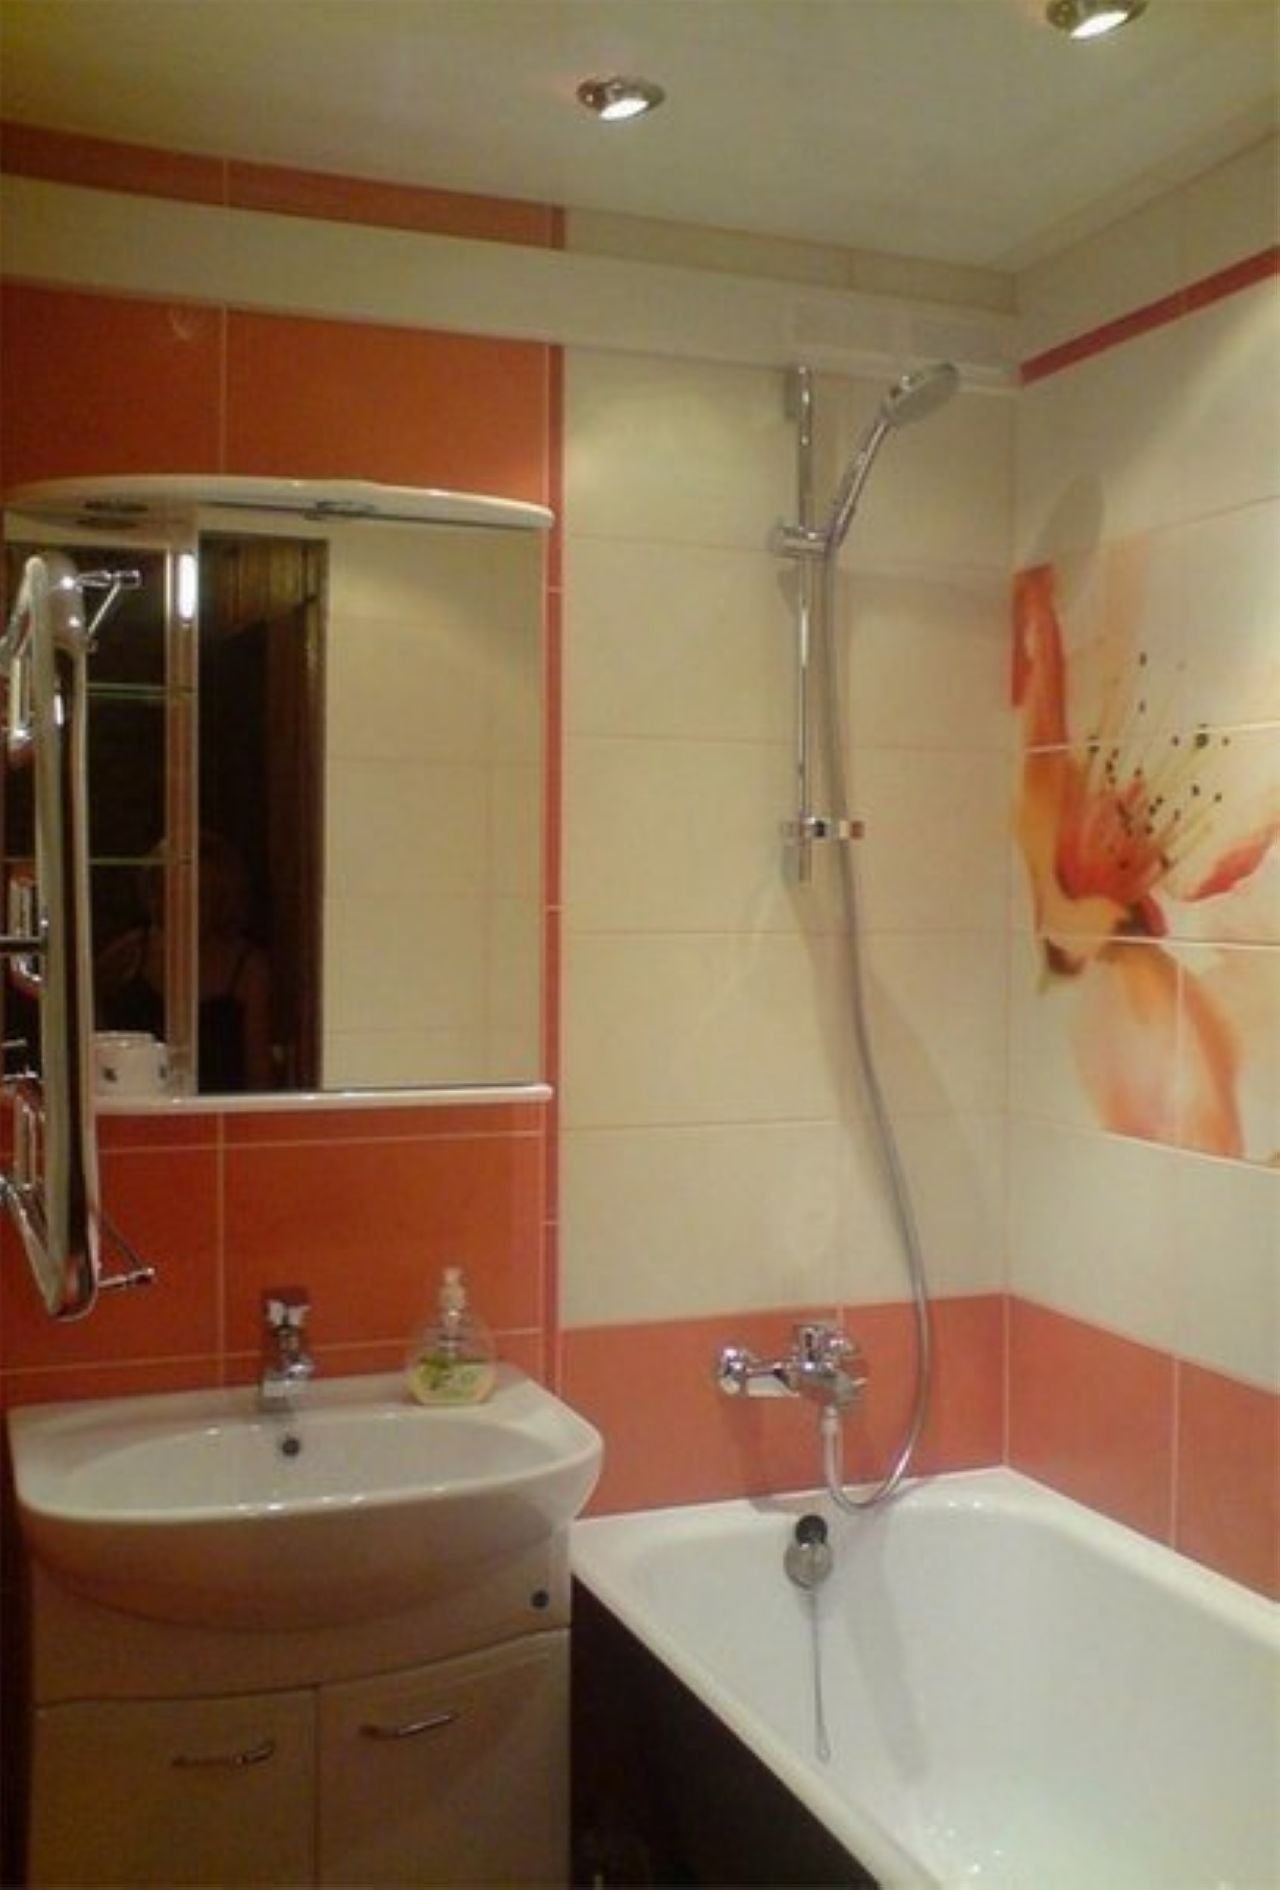 verzija prekrasnog interijera kupaonice u Hruščovu